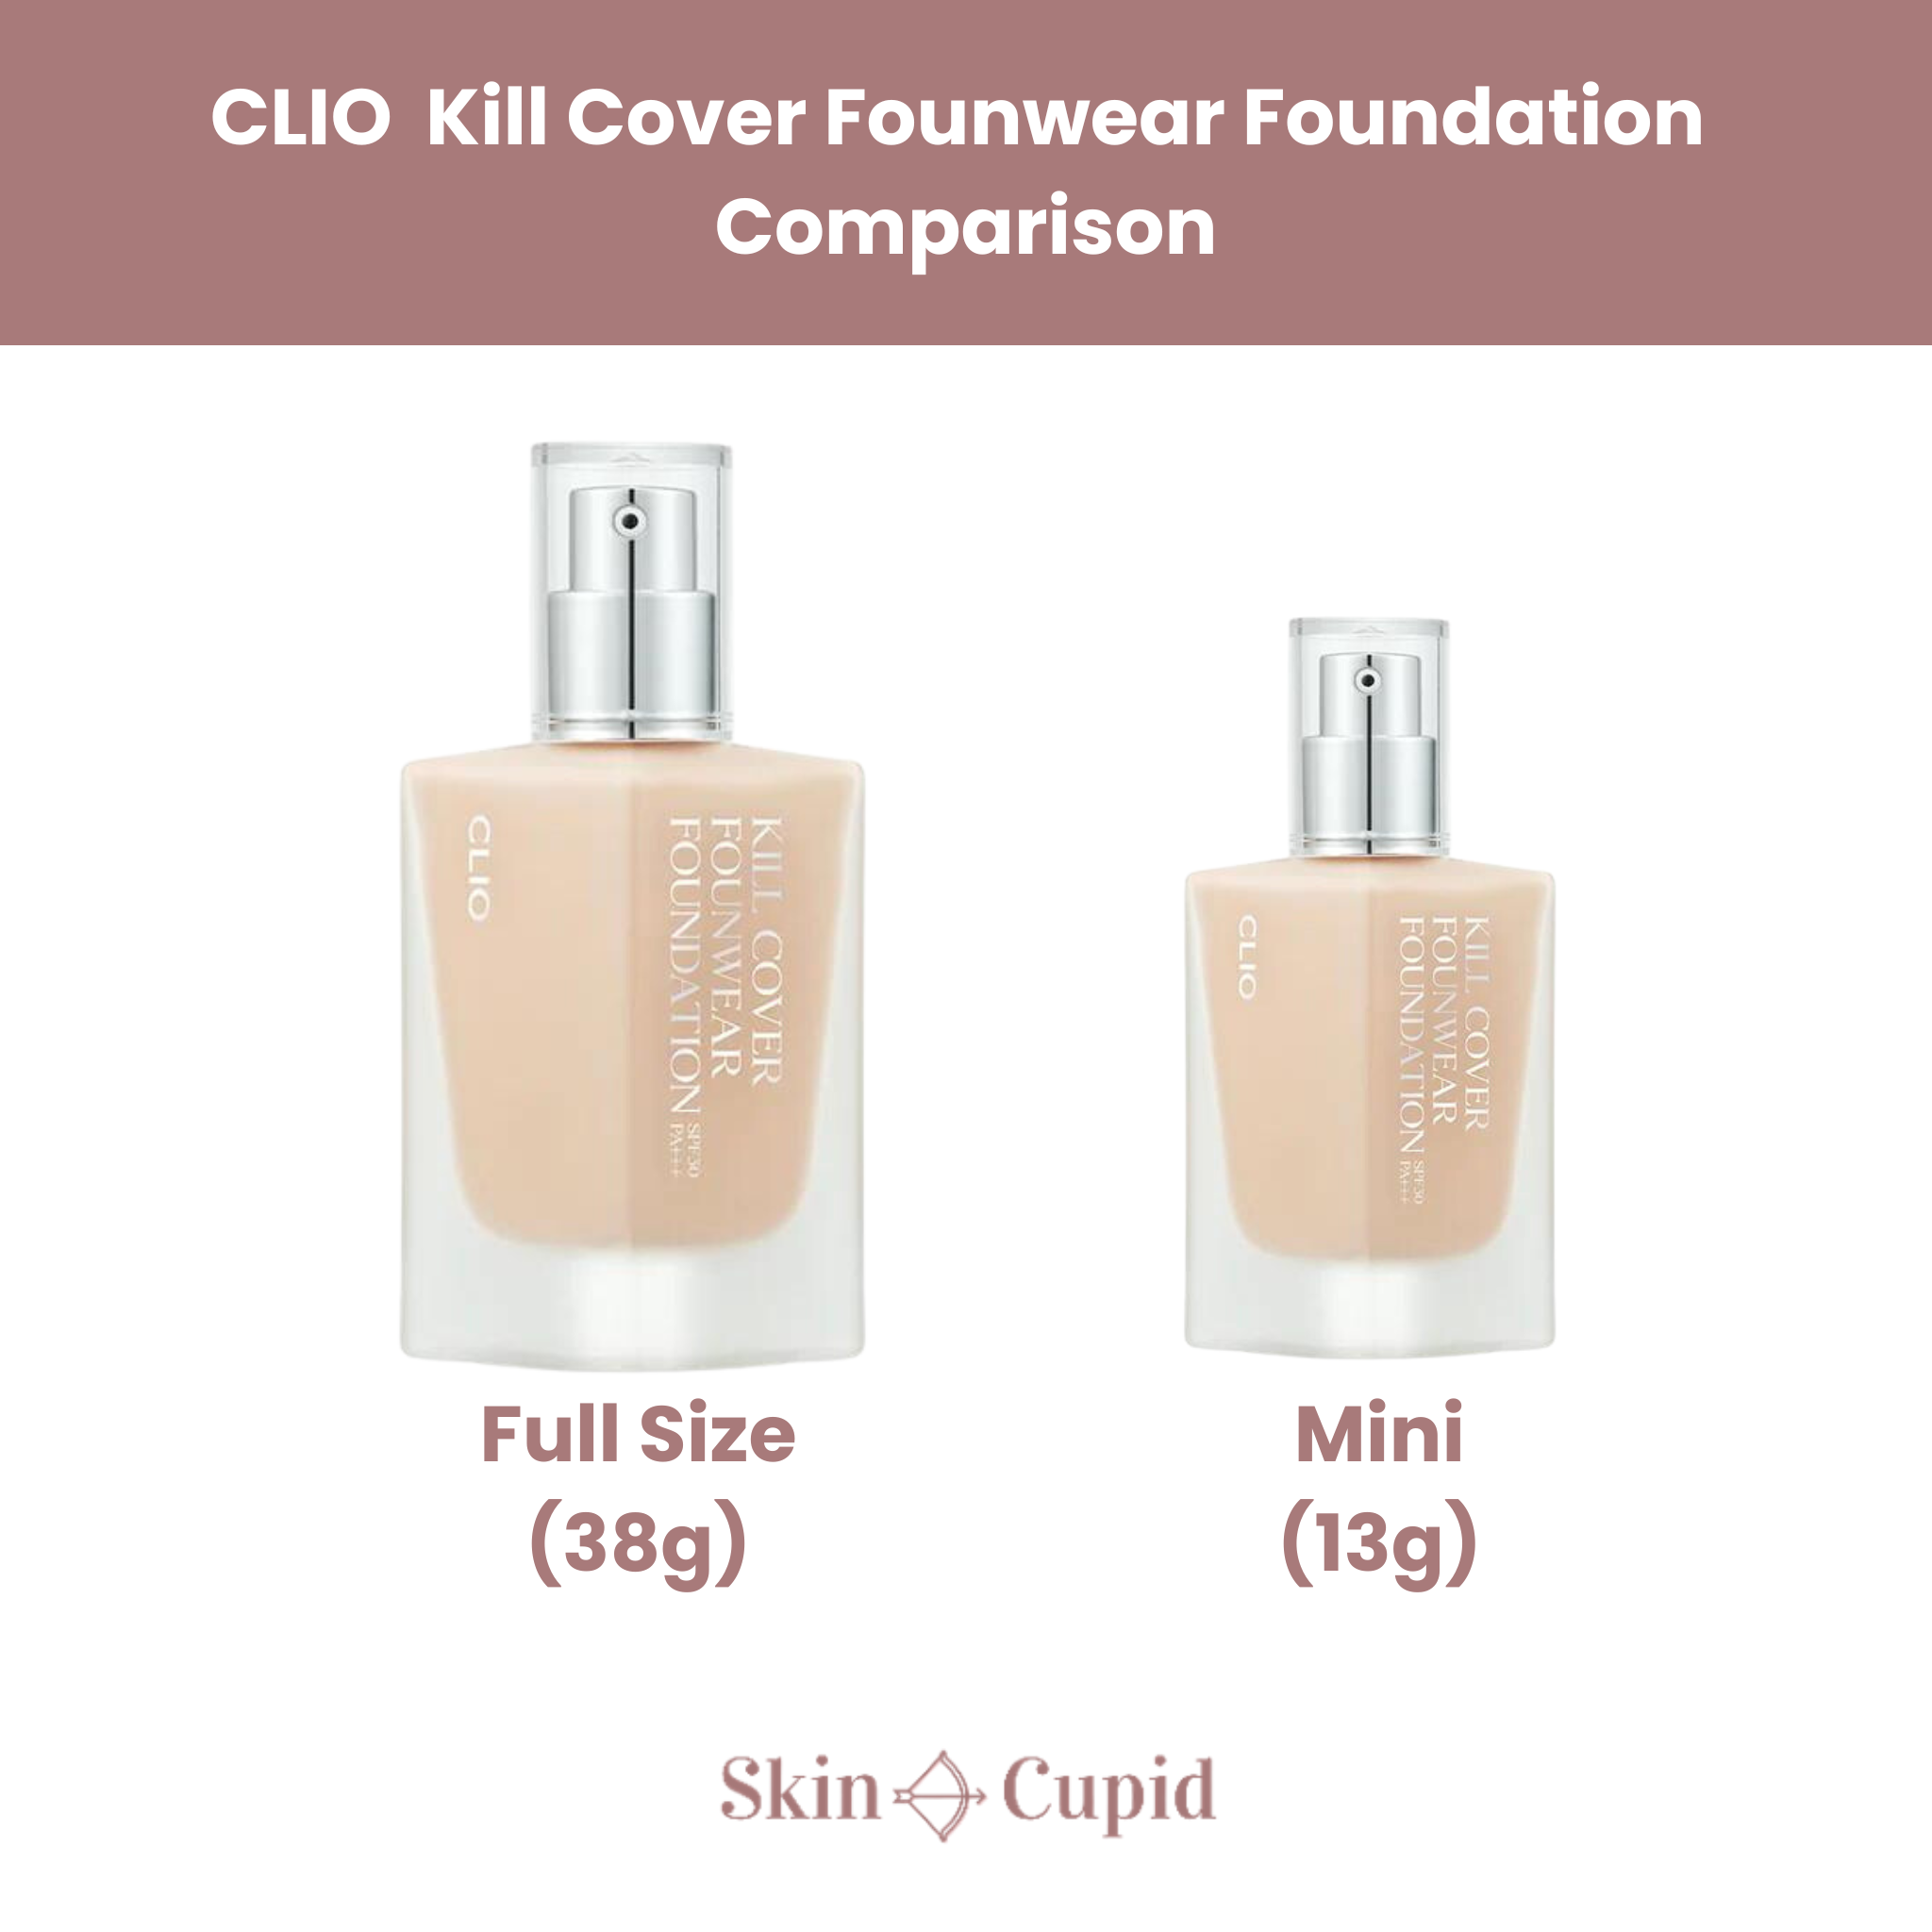 CLIO Kill Cover Founwear Foundation Mini (13g) Comparison with the full size